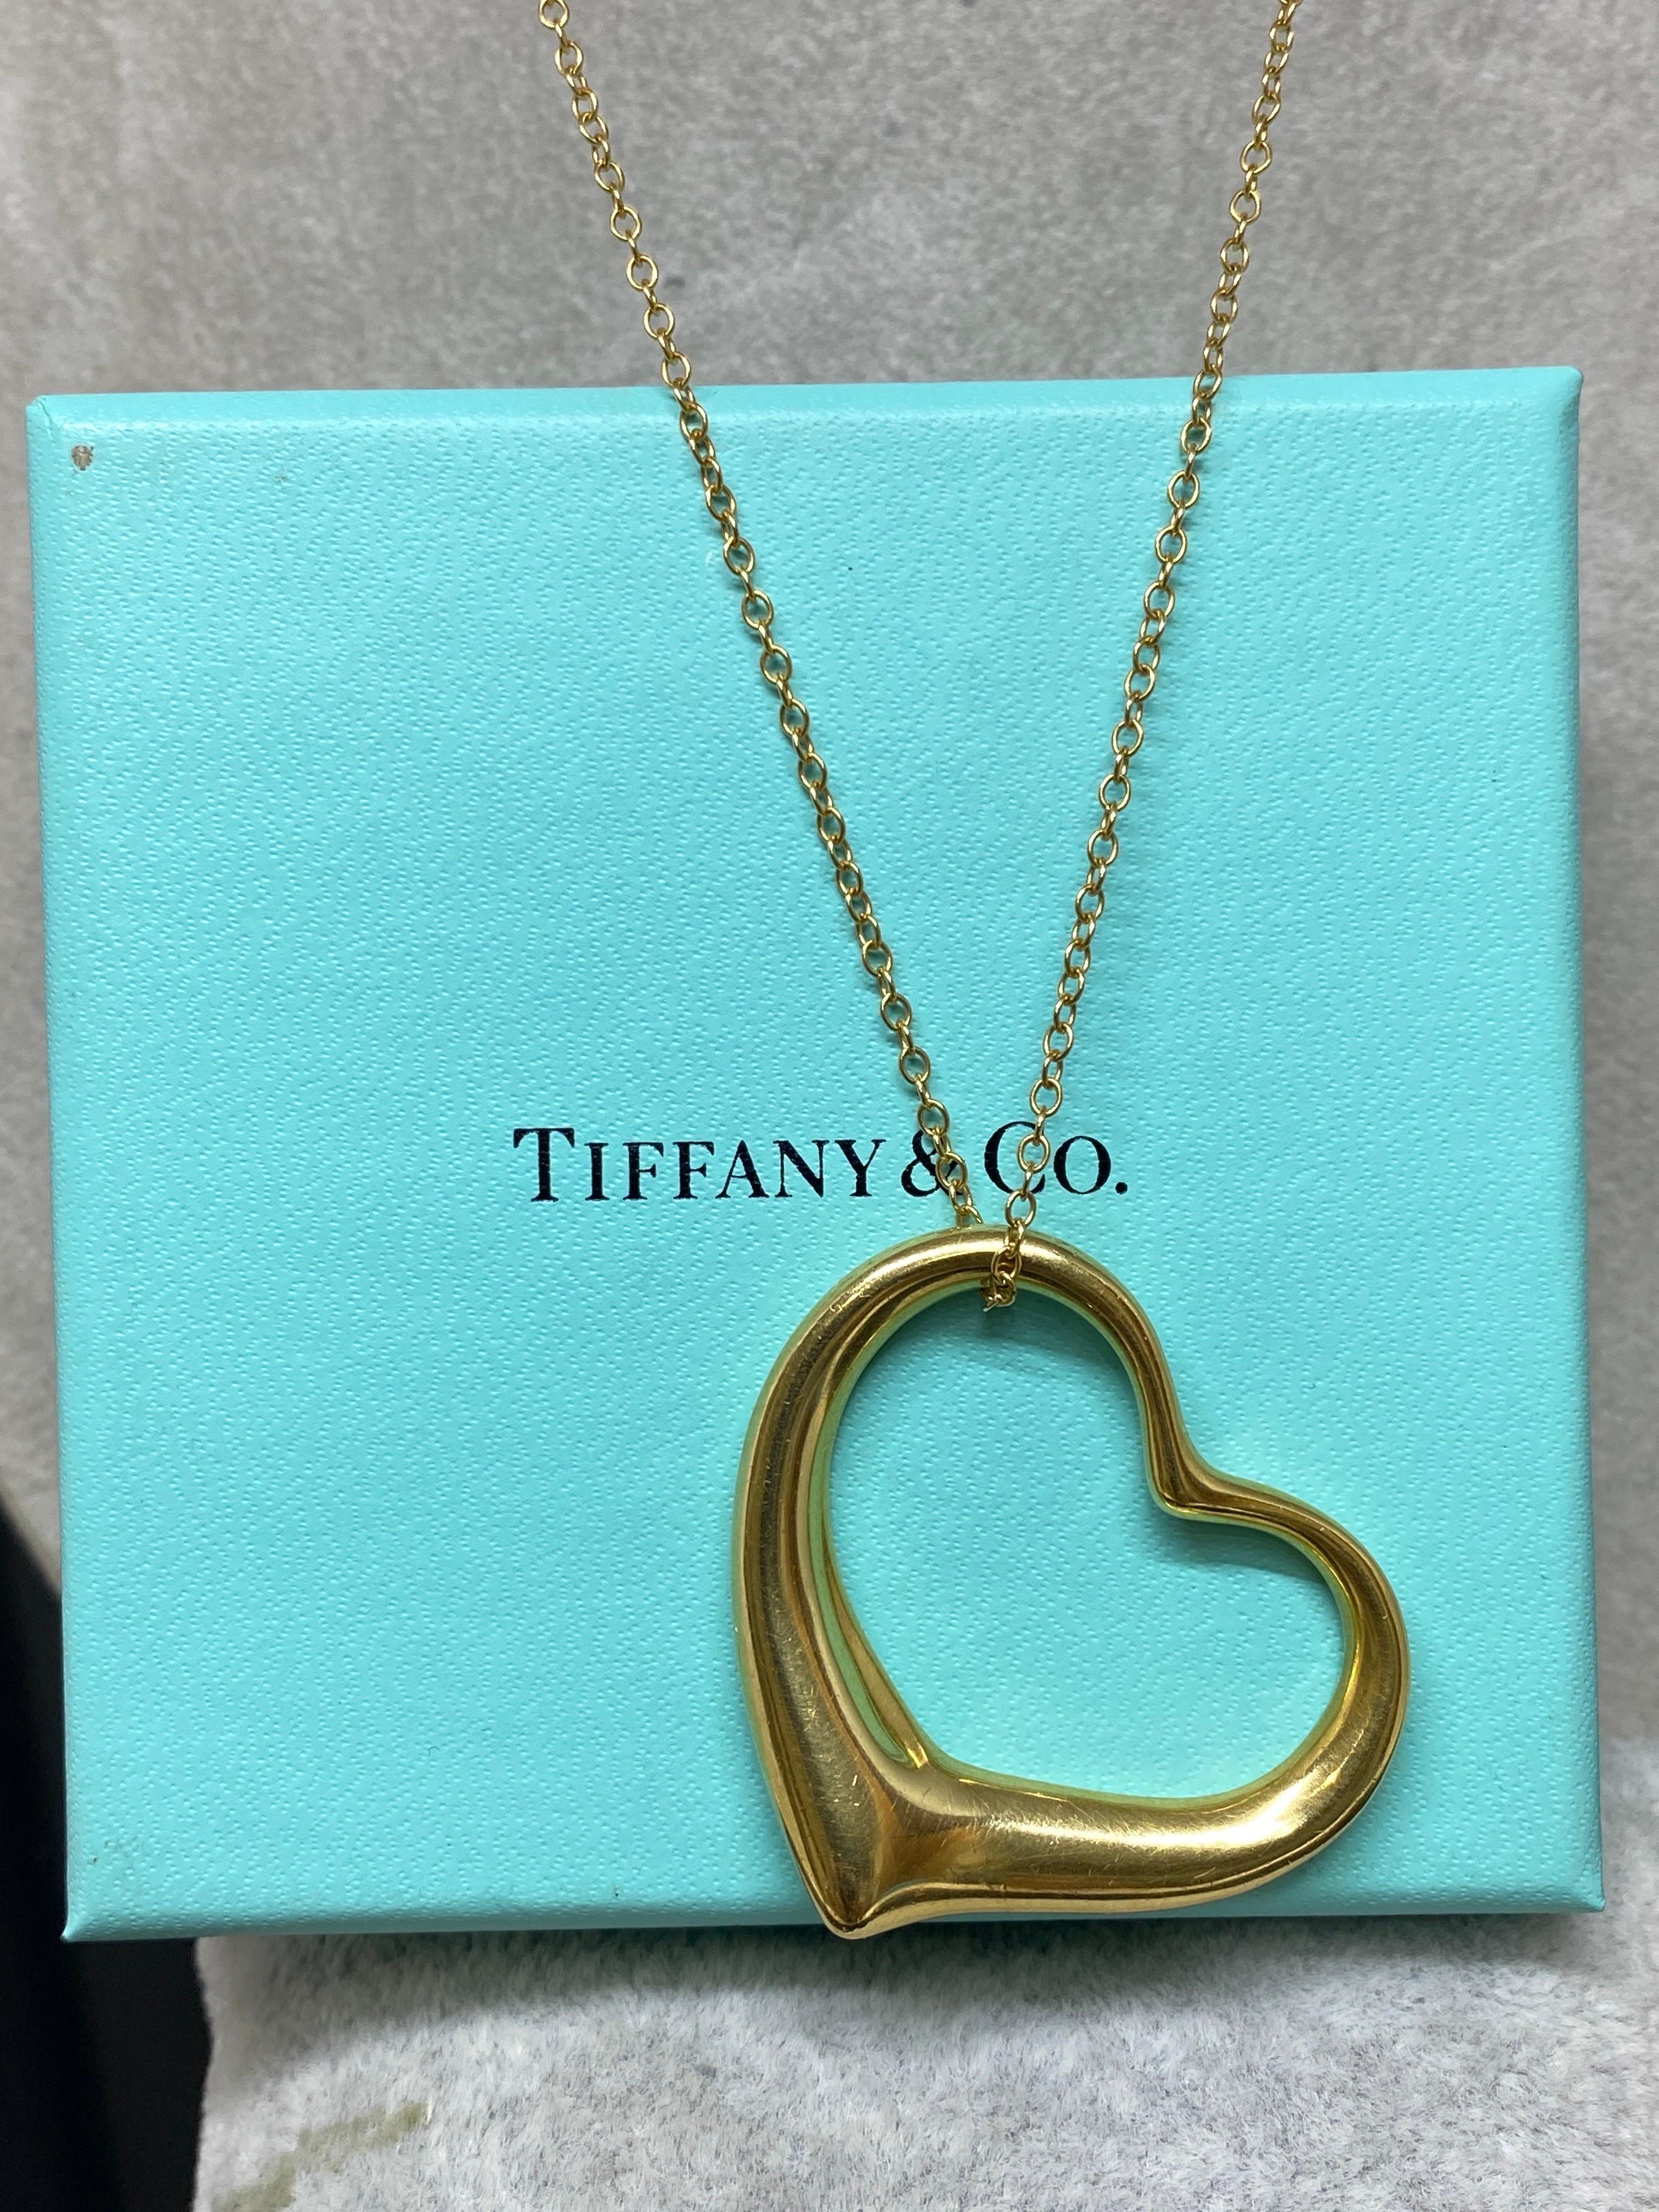 Up for your consideration is this iconic pendentif necklace by Elsa Peretti for Tiffany & Co.

La forme simple et classique des designs Open Heart d'Elsa Peretti célèbre l'esprit de l'amour. Cette élégante création est l'une de ses icones les plus